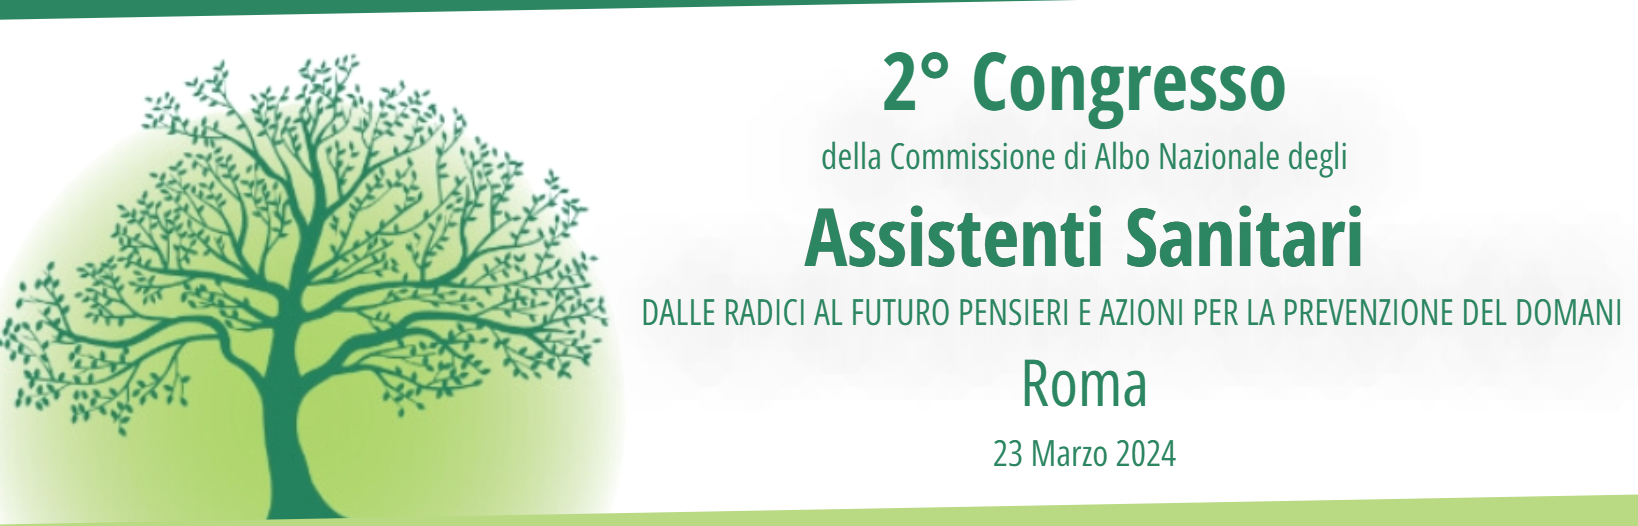 2° Congresso della Commissione di Albo Nazionale degli Assistenti Sanitari - Roma, 23 marzo